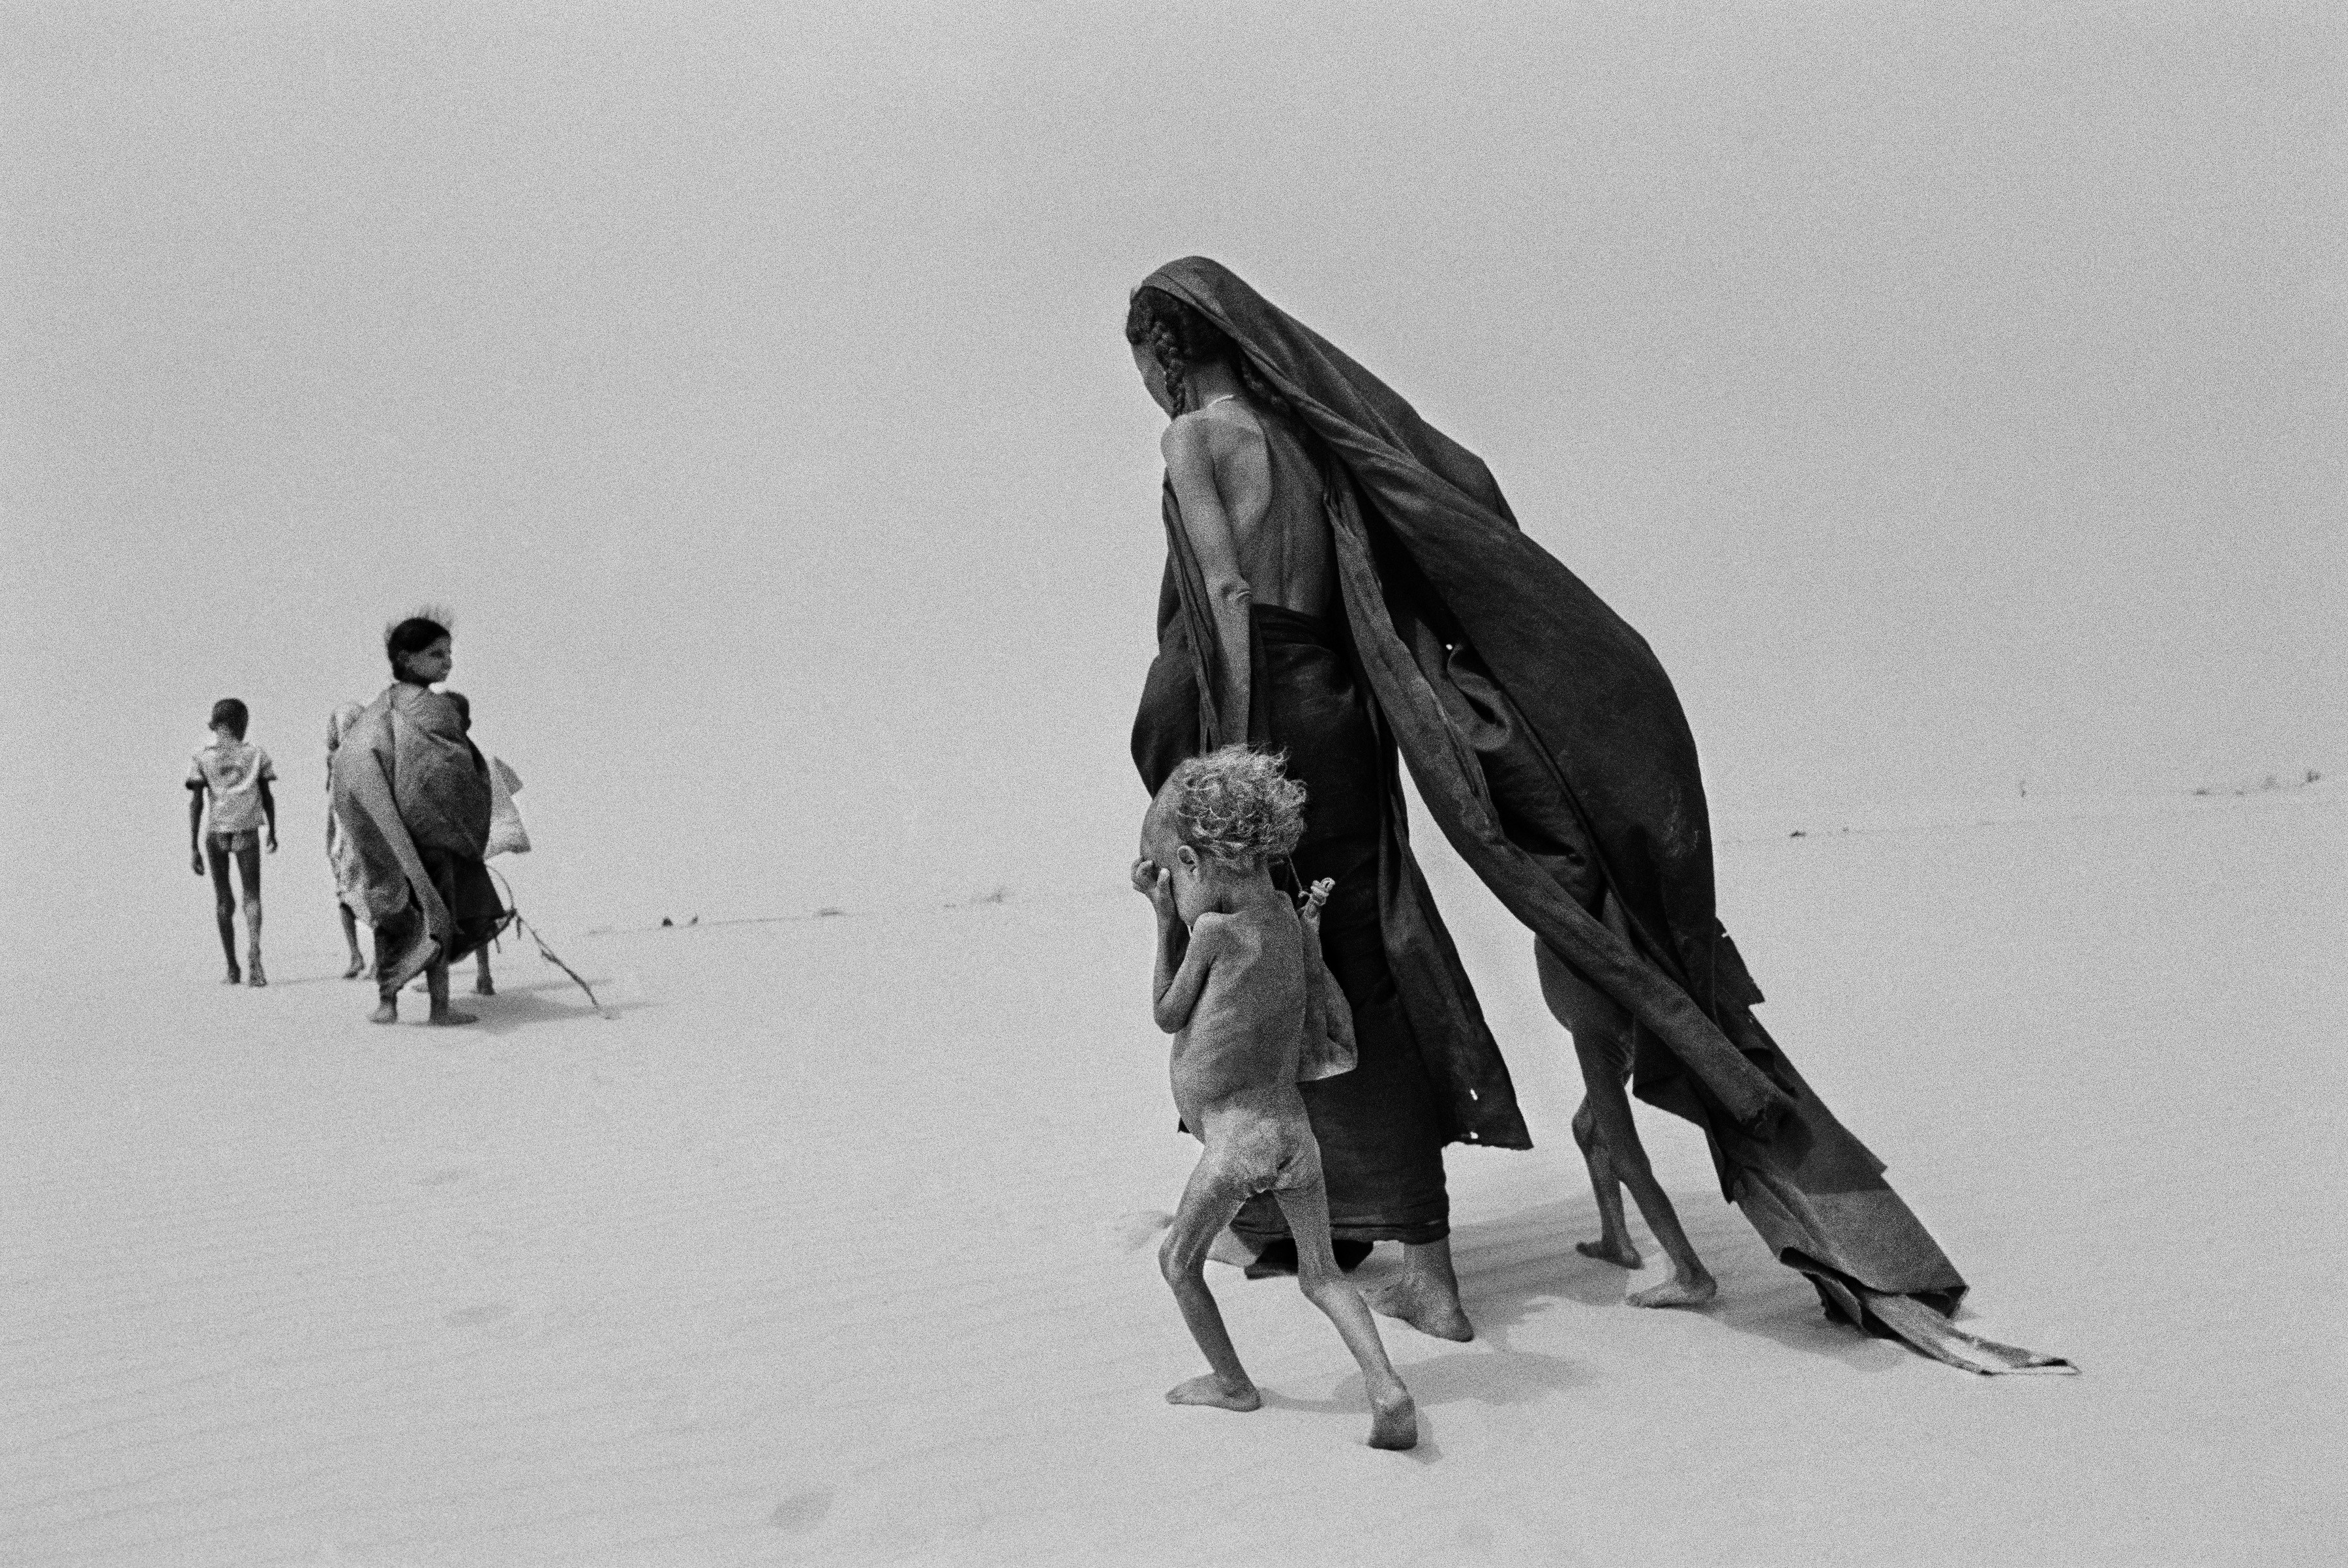 Сахель,  Мали, 1984. Автор Себастьян Сальгадо